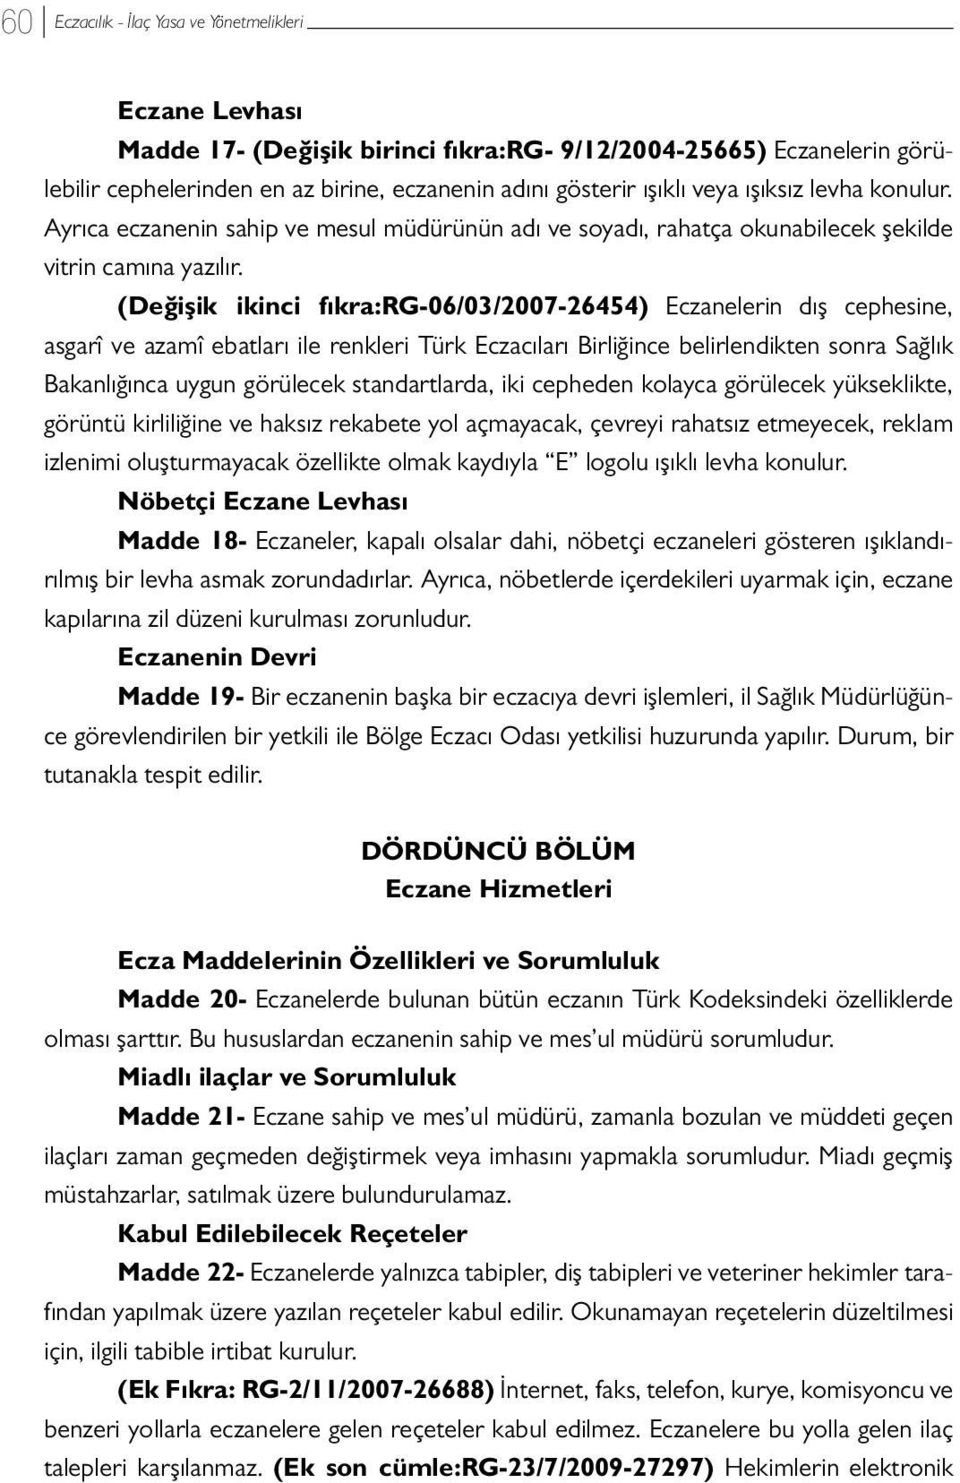 (Değişik ikinci fıkra:rg-06/03/2007-26454) Eczanelerin dış cephesine, asgarî ve azamî ebatları ile renkleri Türk Eczacıları Birliğince belirlendikten sonra Sağlık Bakanlığınca uygun görülecek